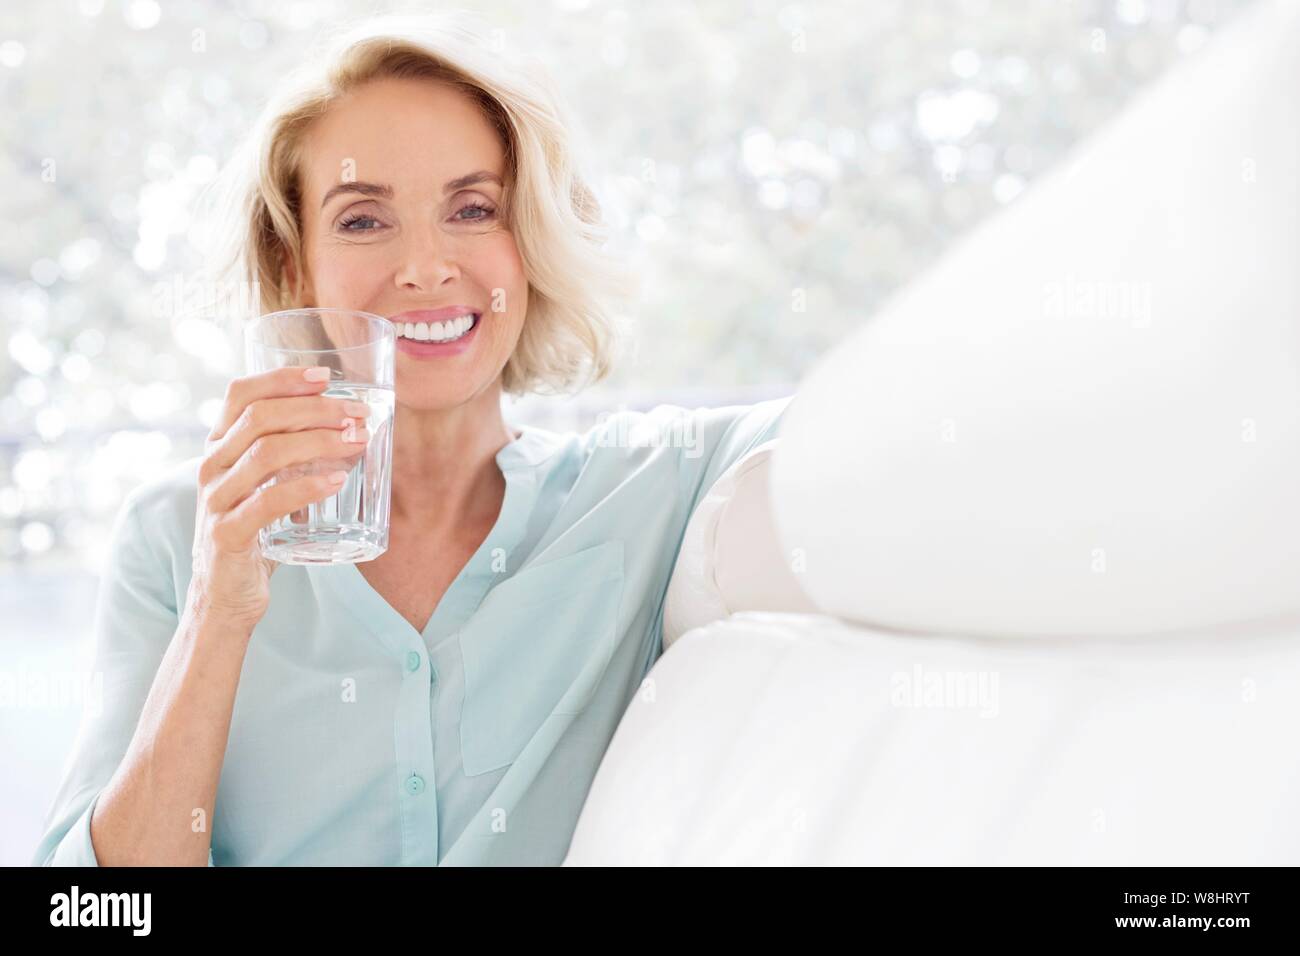 Young woman smiling avec verre d'eau. Banque D'Images